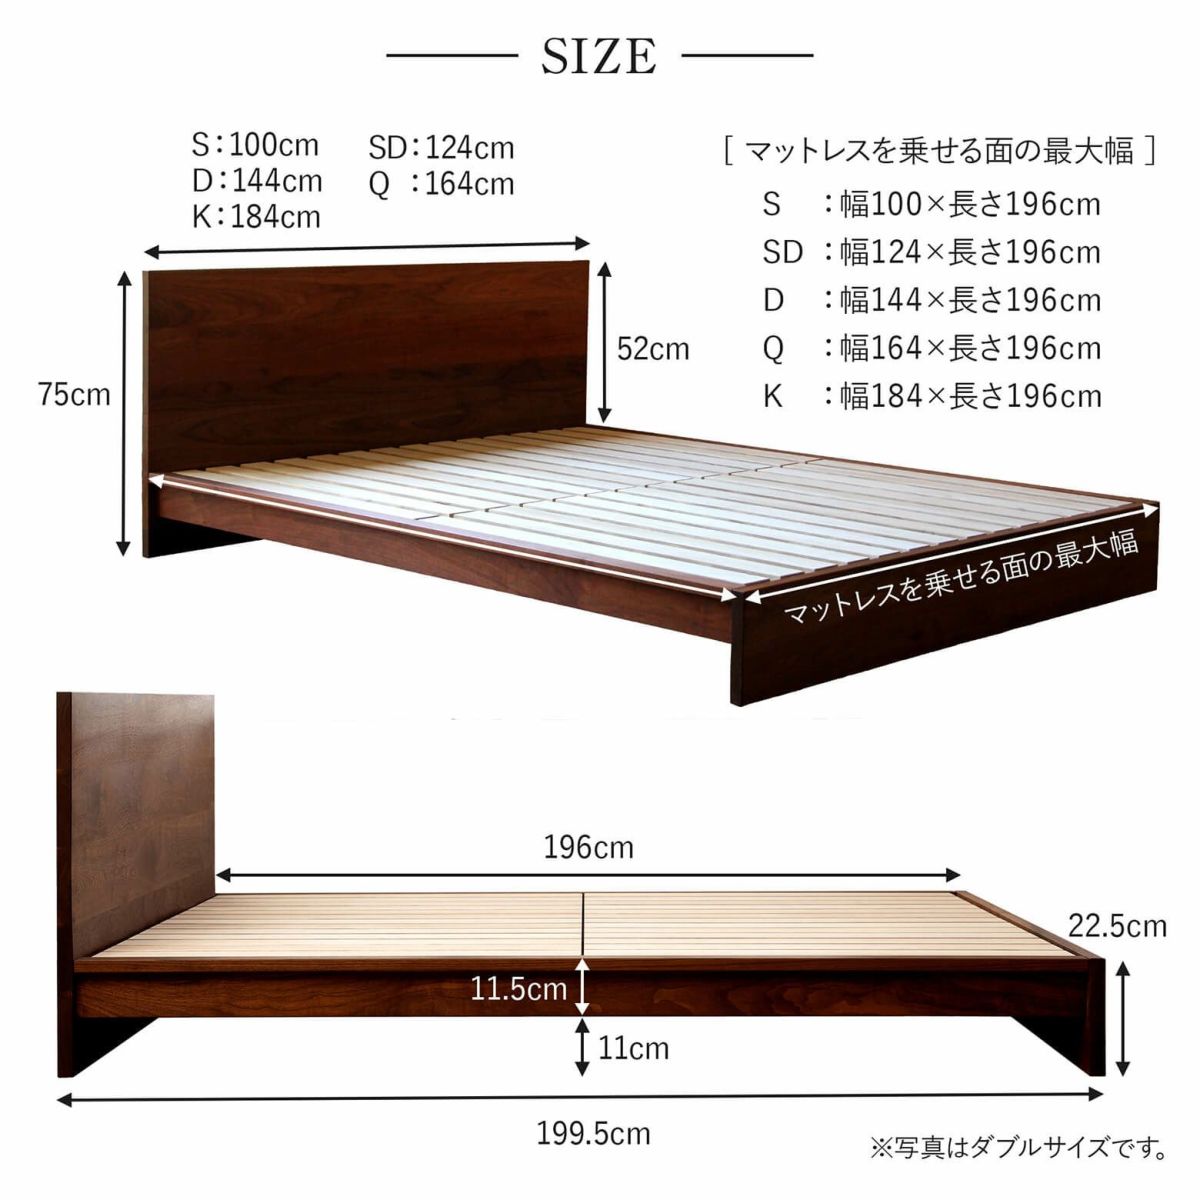 セミダブルサイズベッド | 日本最大級のベッド専門店 ビーナスベッド